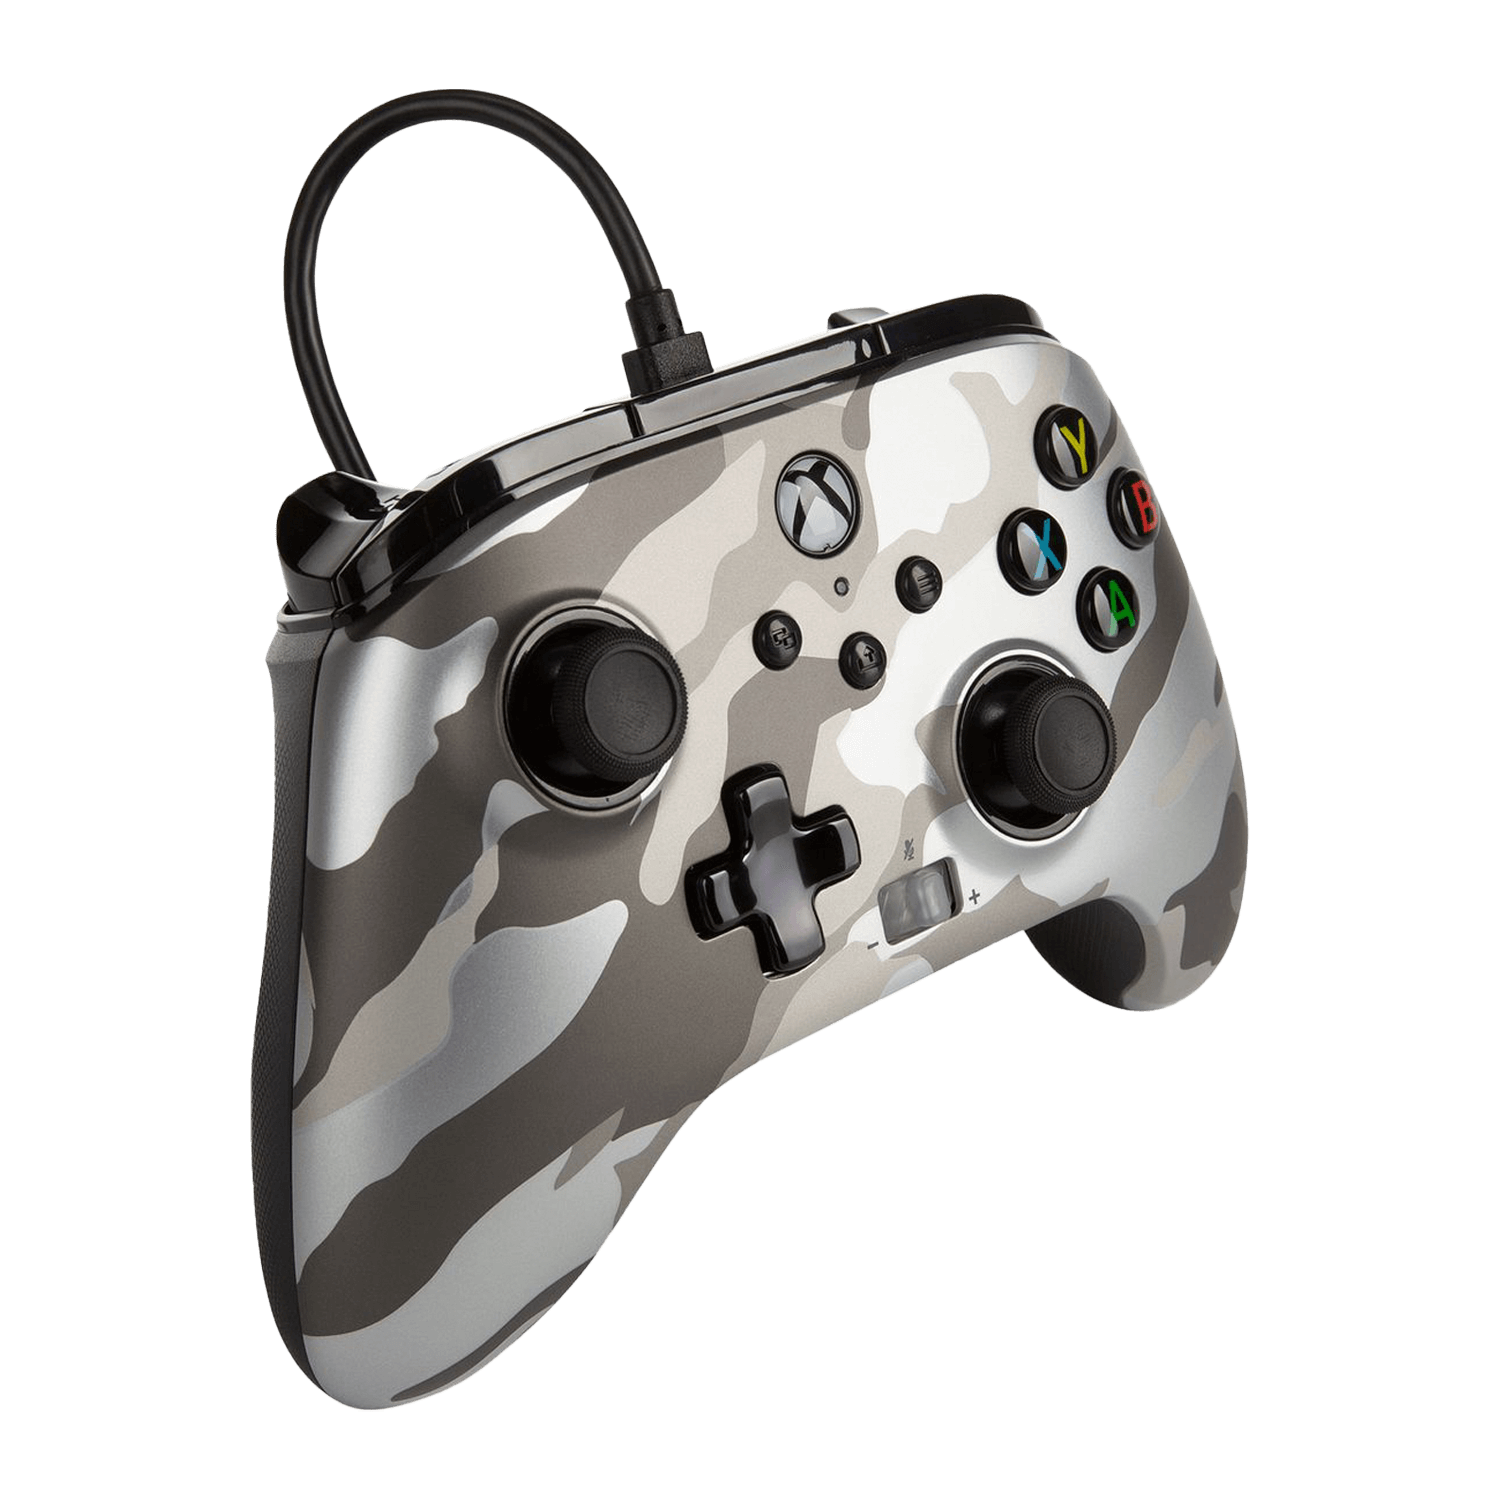 Controle PowerA Enhanced Wired para Xbox - Metallic White Camo (PWA-A-METALLIC)